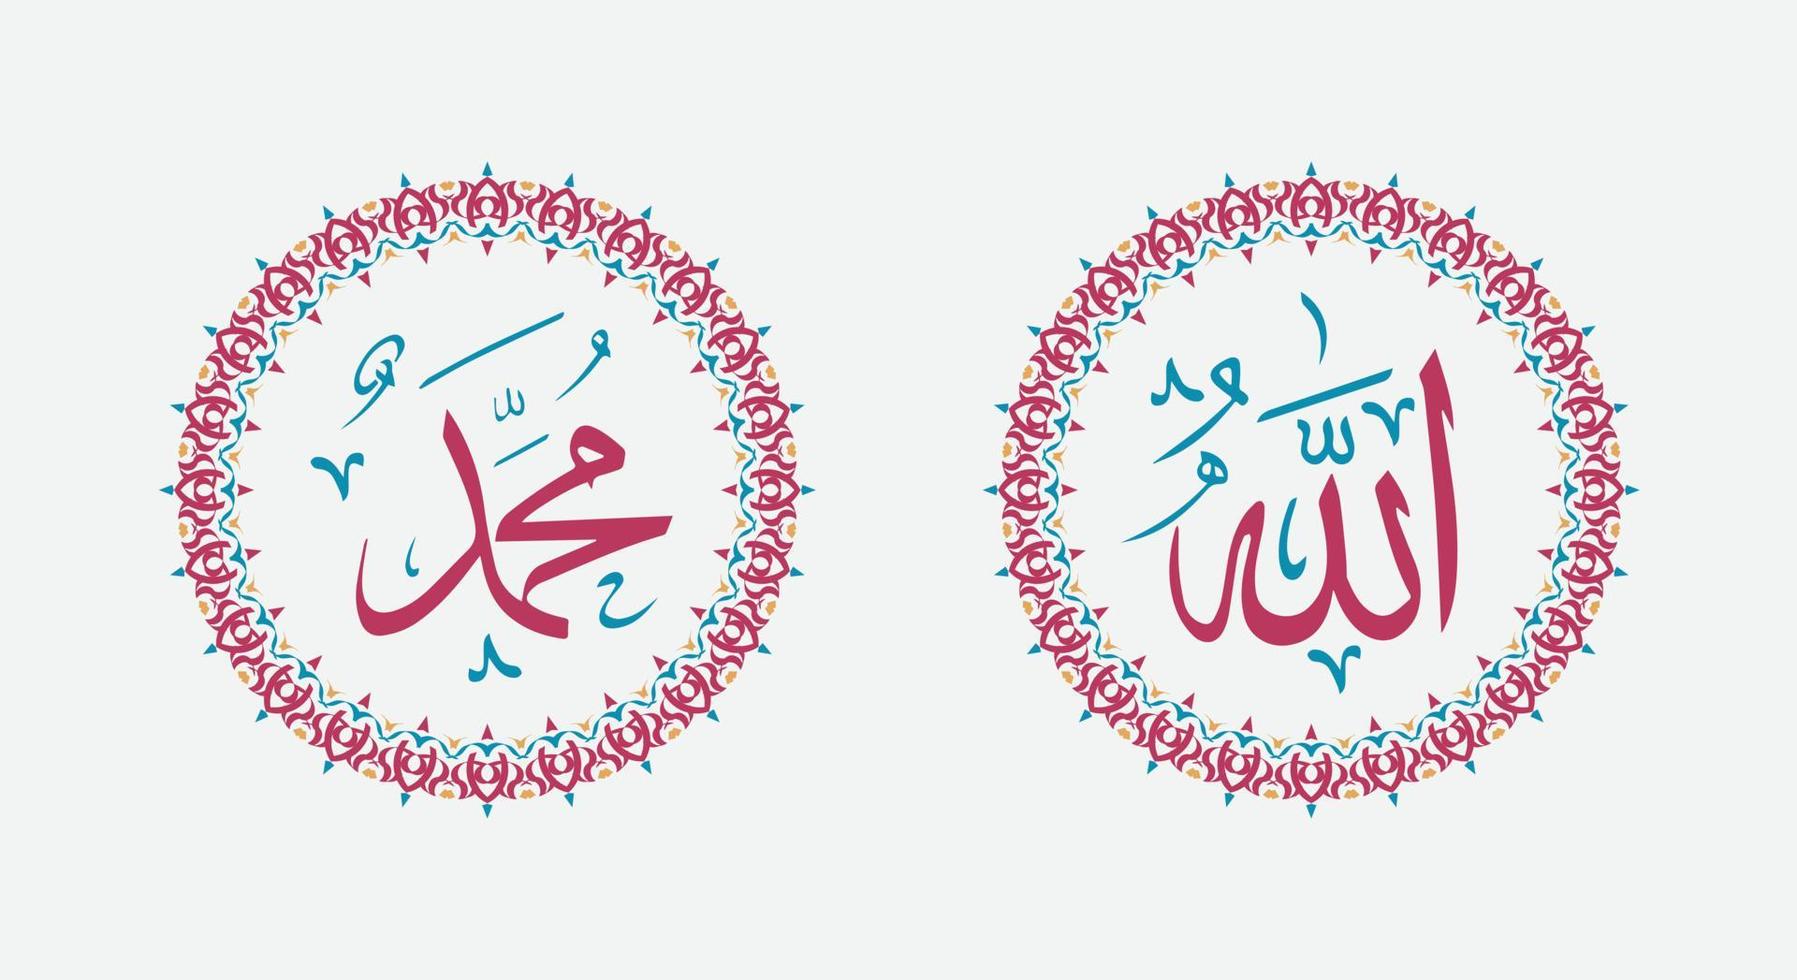 allah und muhammad, gott und prophet in islamischer wandkunstdekoration mit vintage-farbe vektor